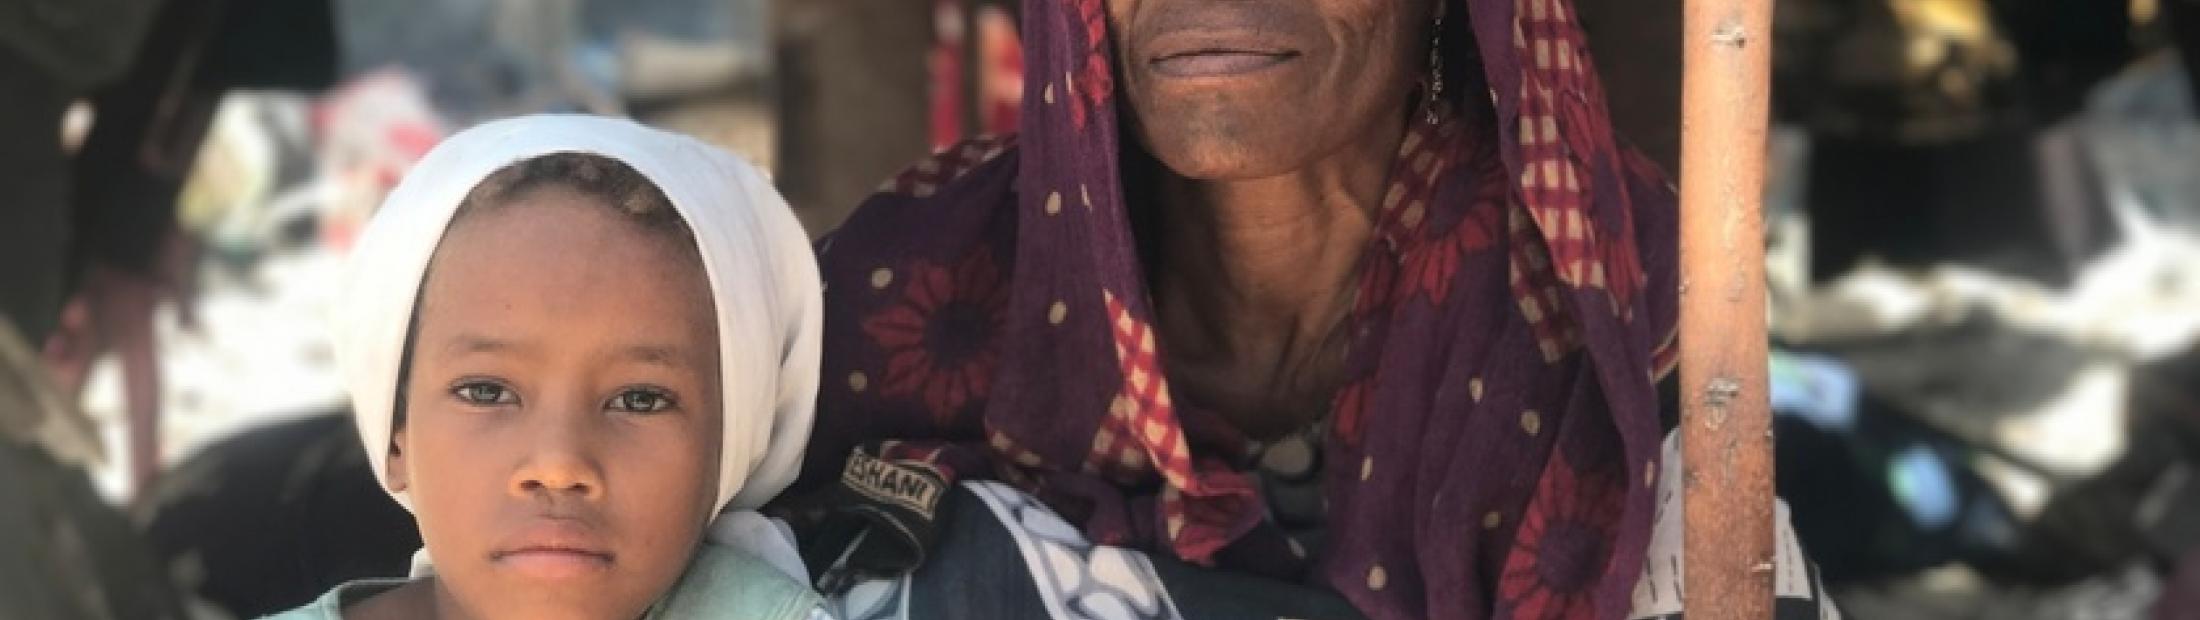 Refugiados somalíes regresan a su país ante la guerra en Yemen   